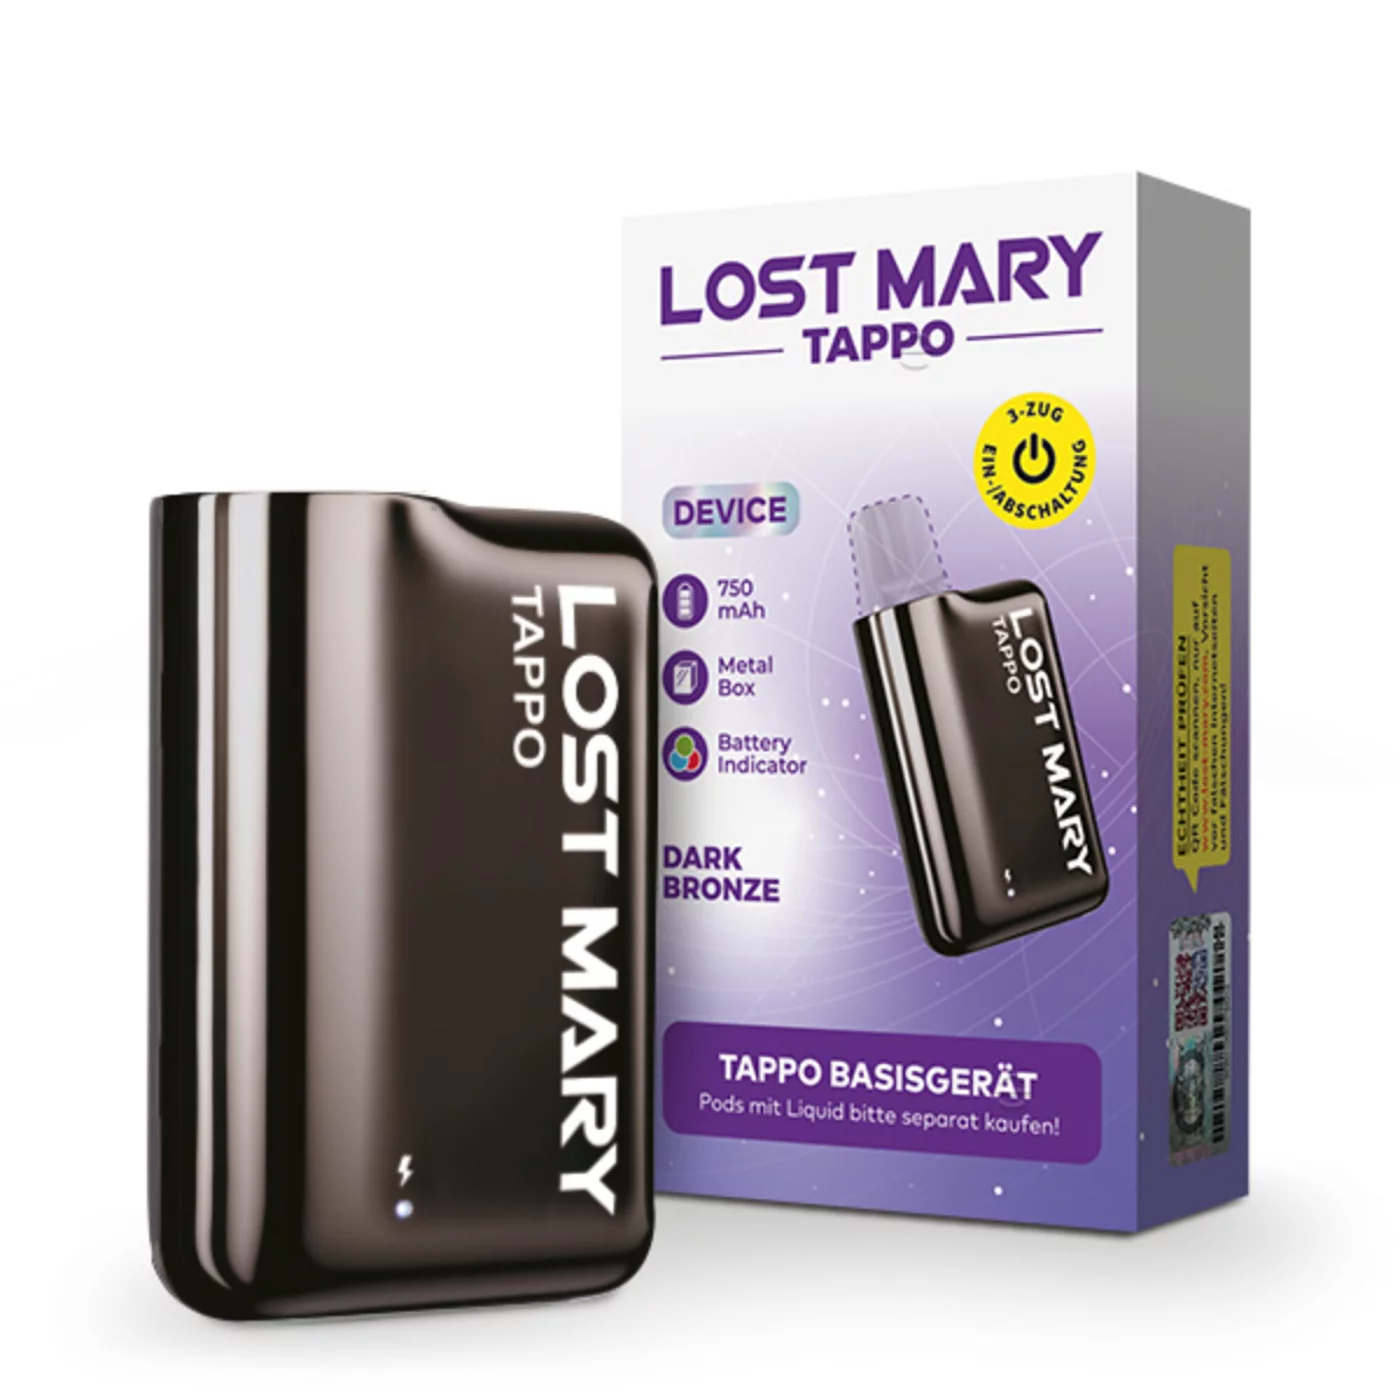 Lost Mary Tappo Pod System - Basisgerät Dark Bronze